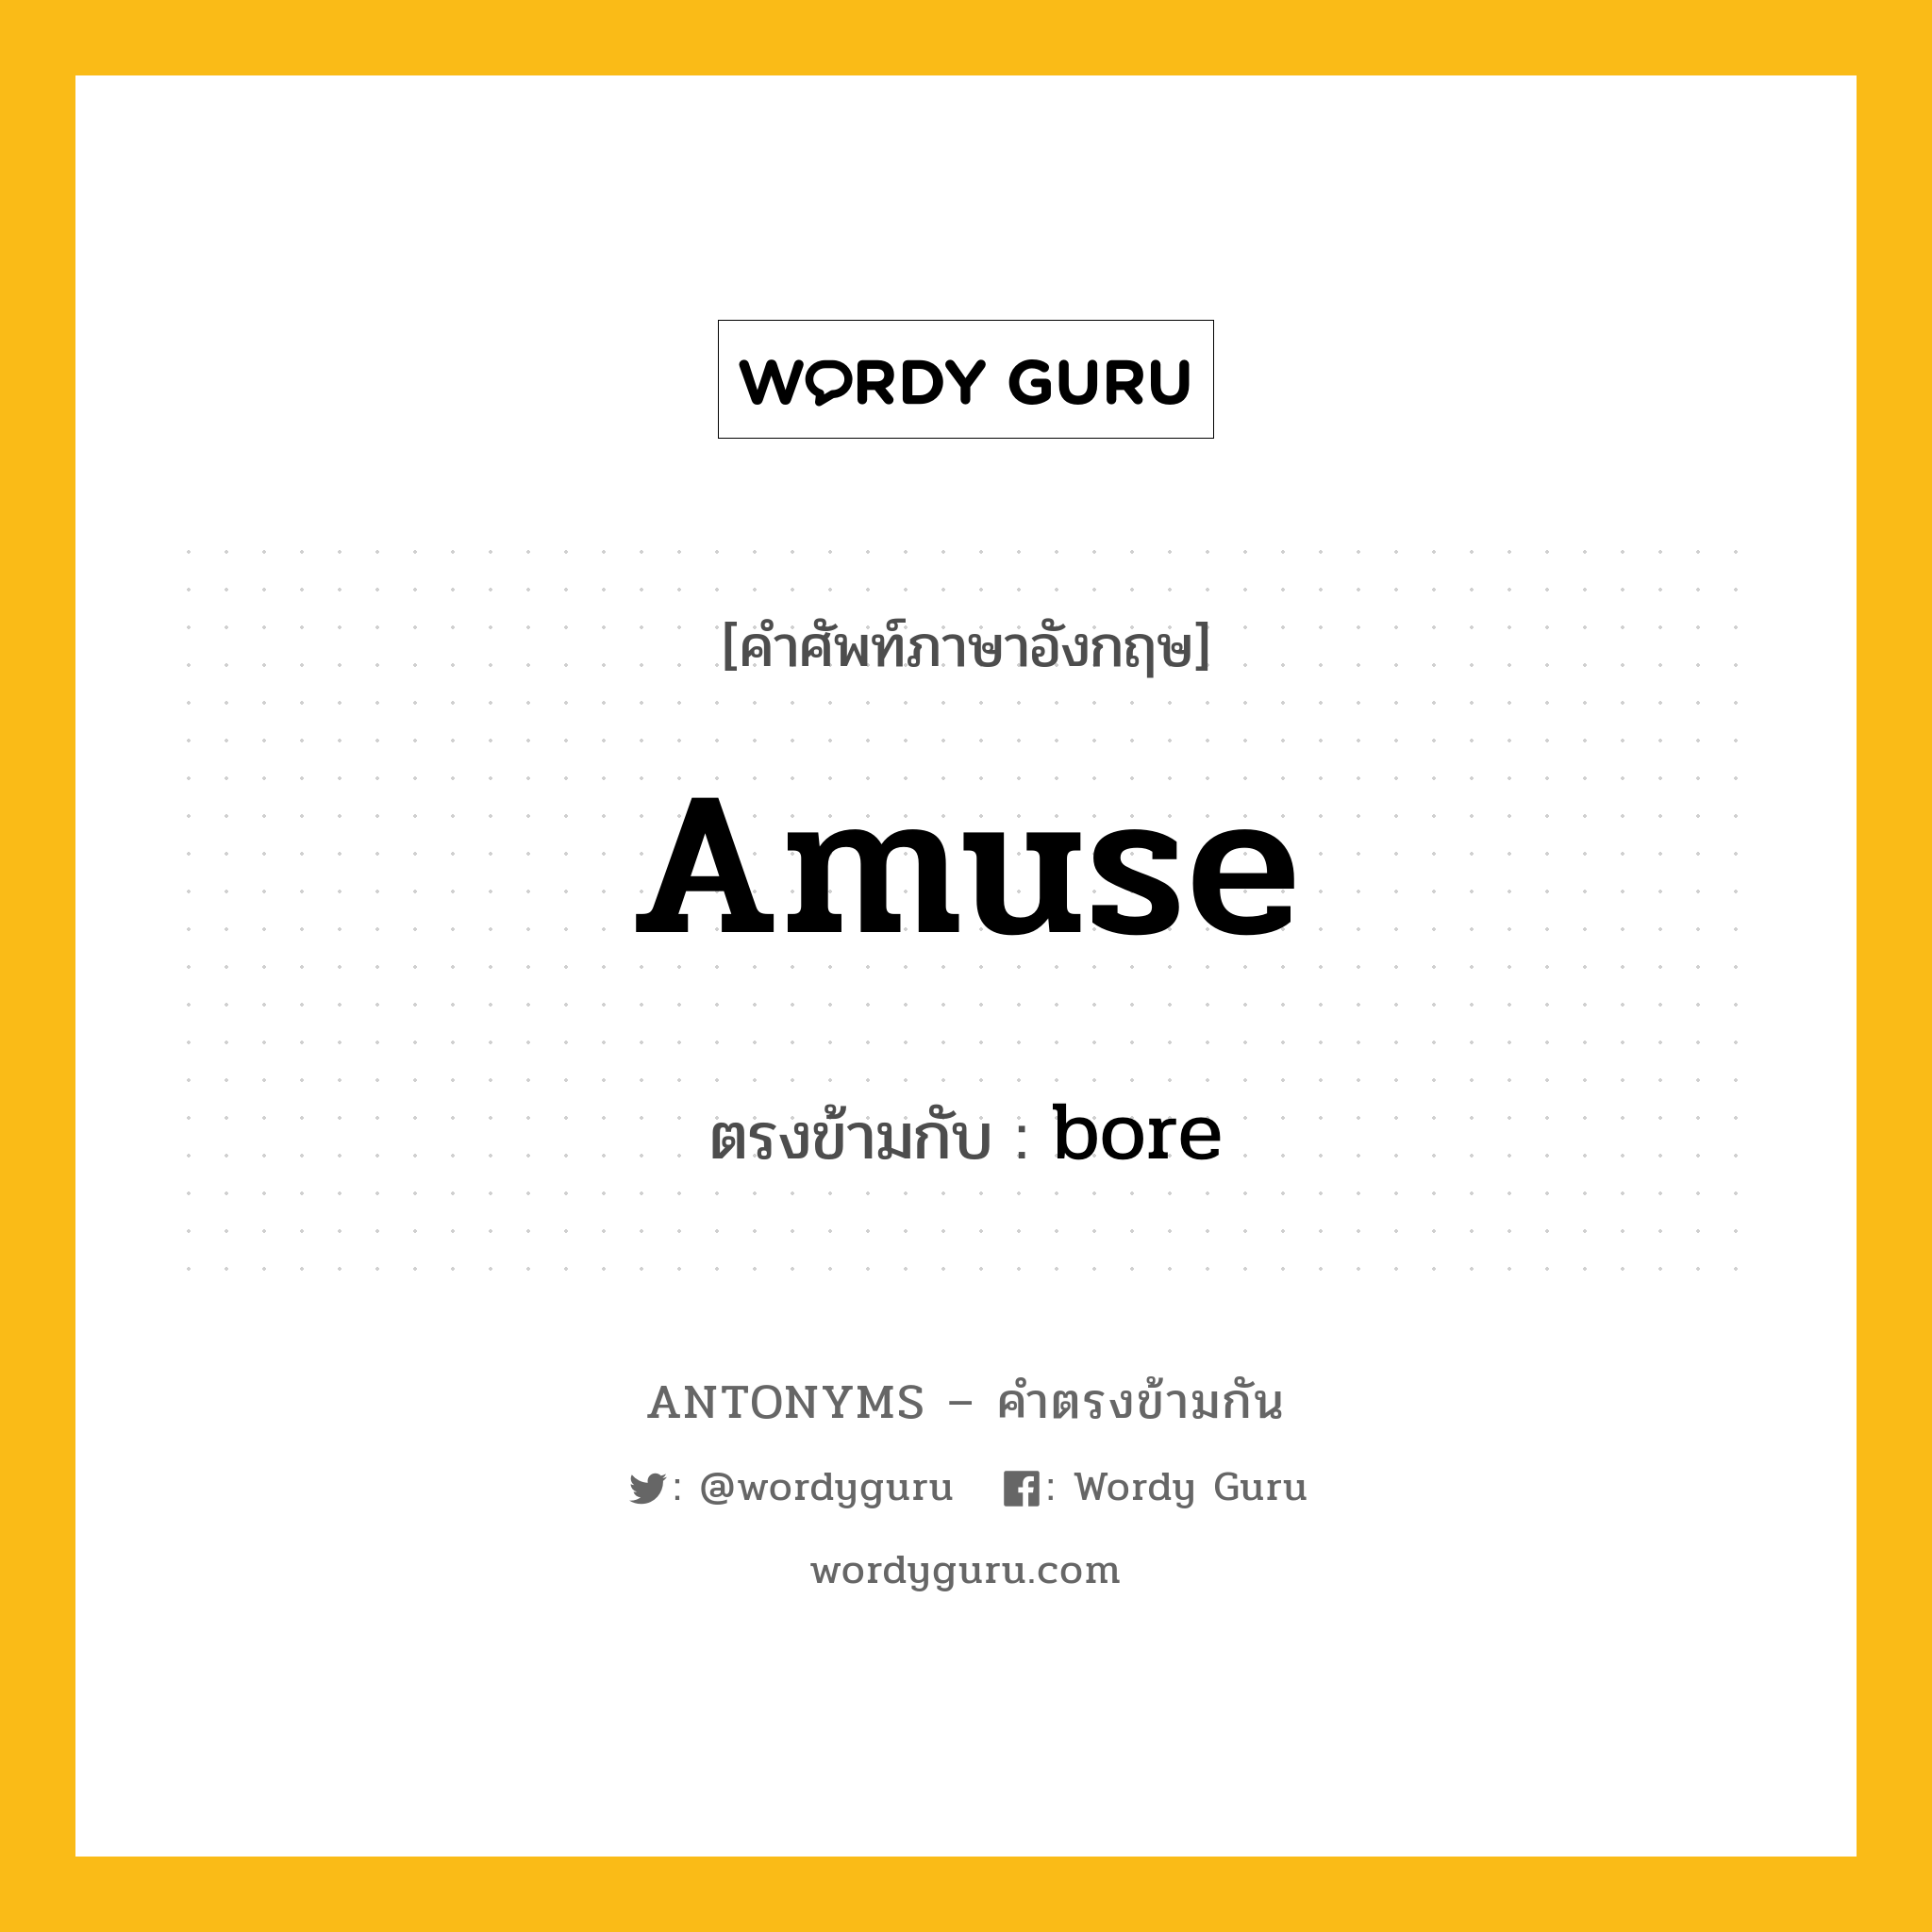 amuse เป็นคำตรงข้ามกับคำไหนบ้าง?, คำศัพท์ภาษาอังกฤษ amuse ตรงข้ามกับ bore หมวด bore